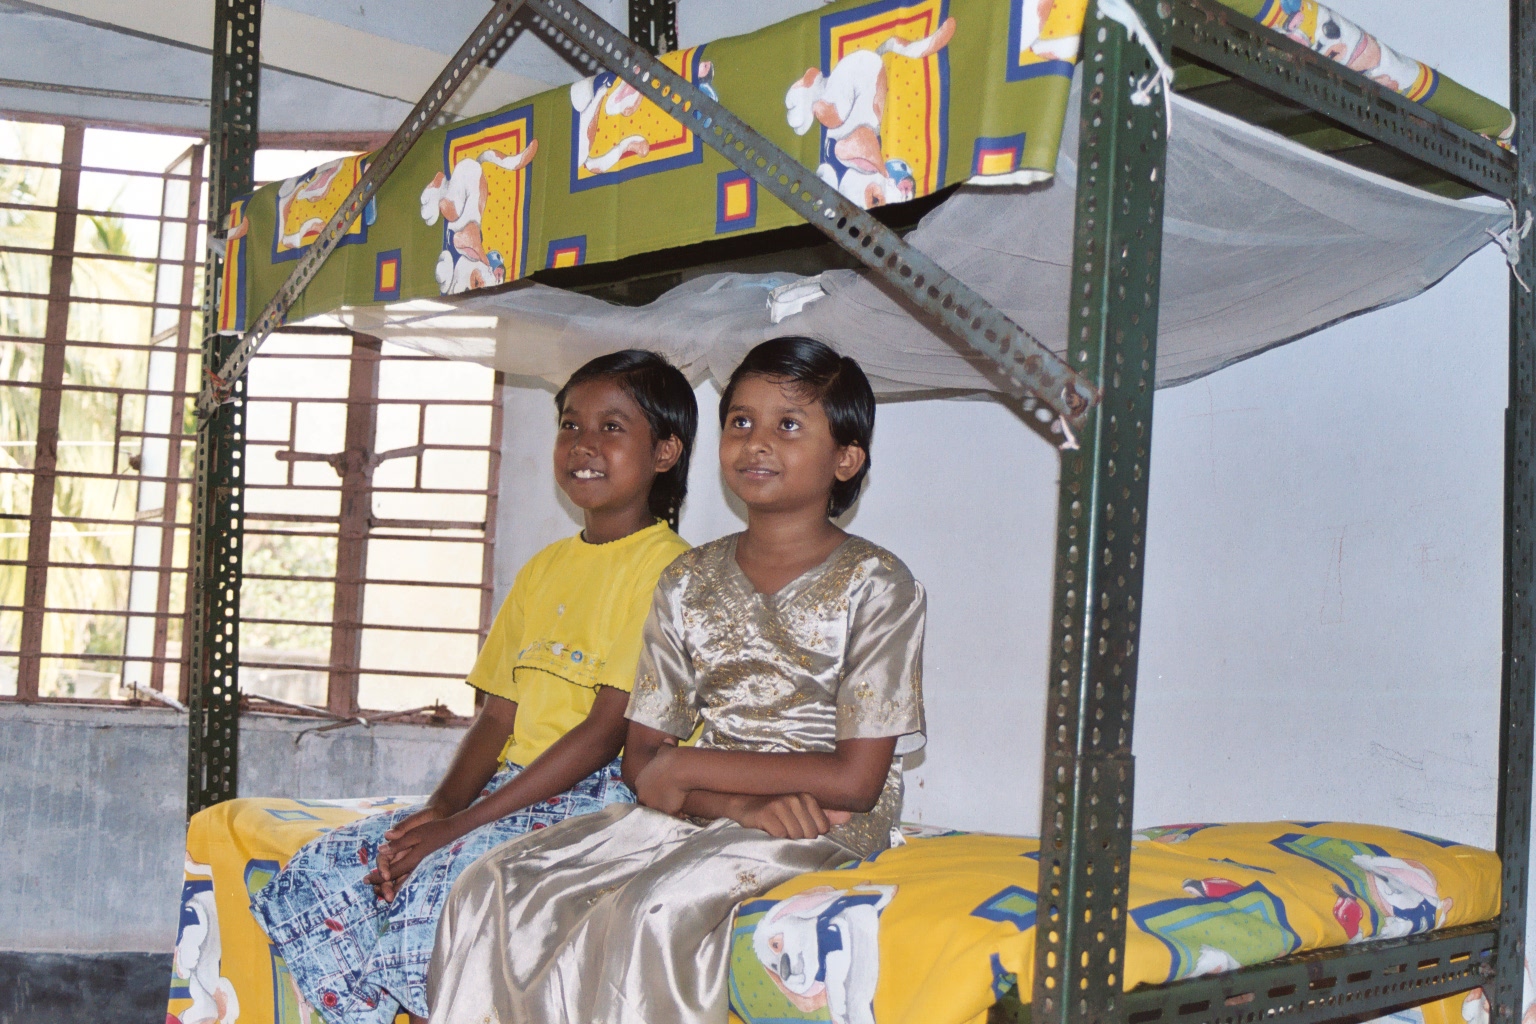 Børn i familiecenter, Indien